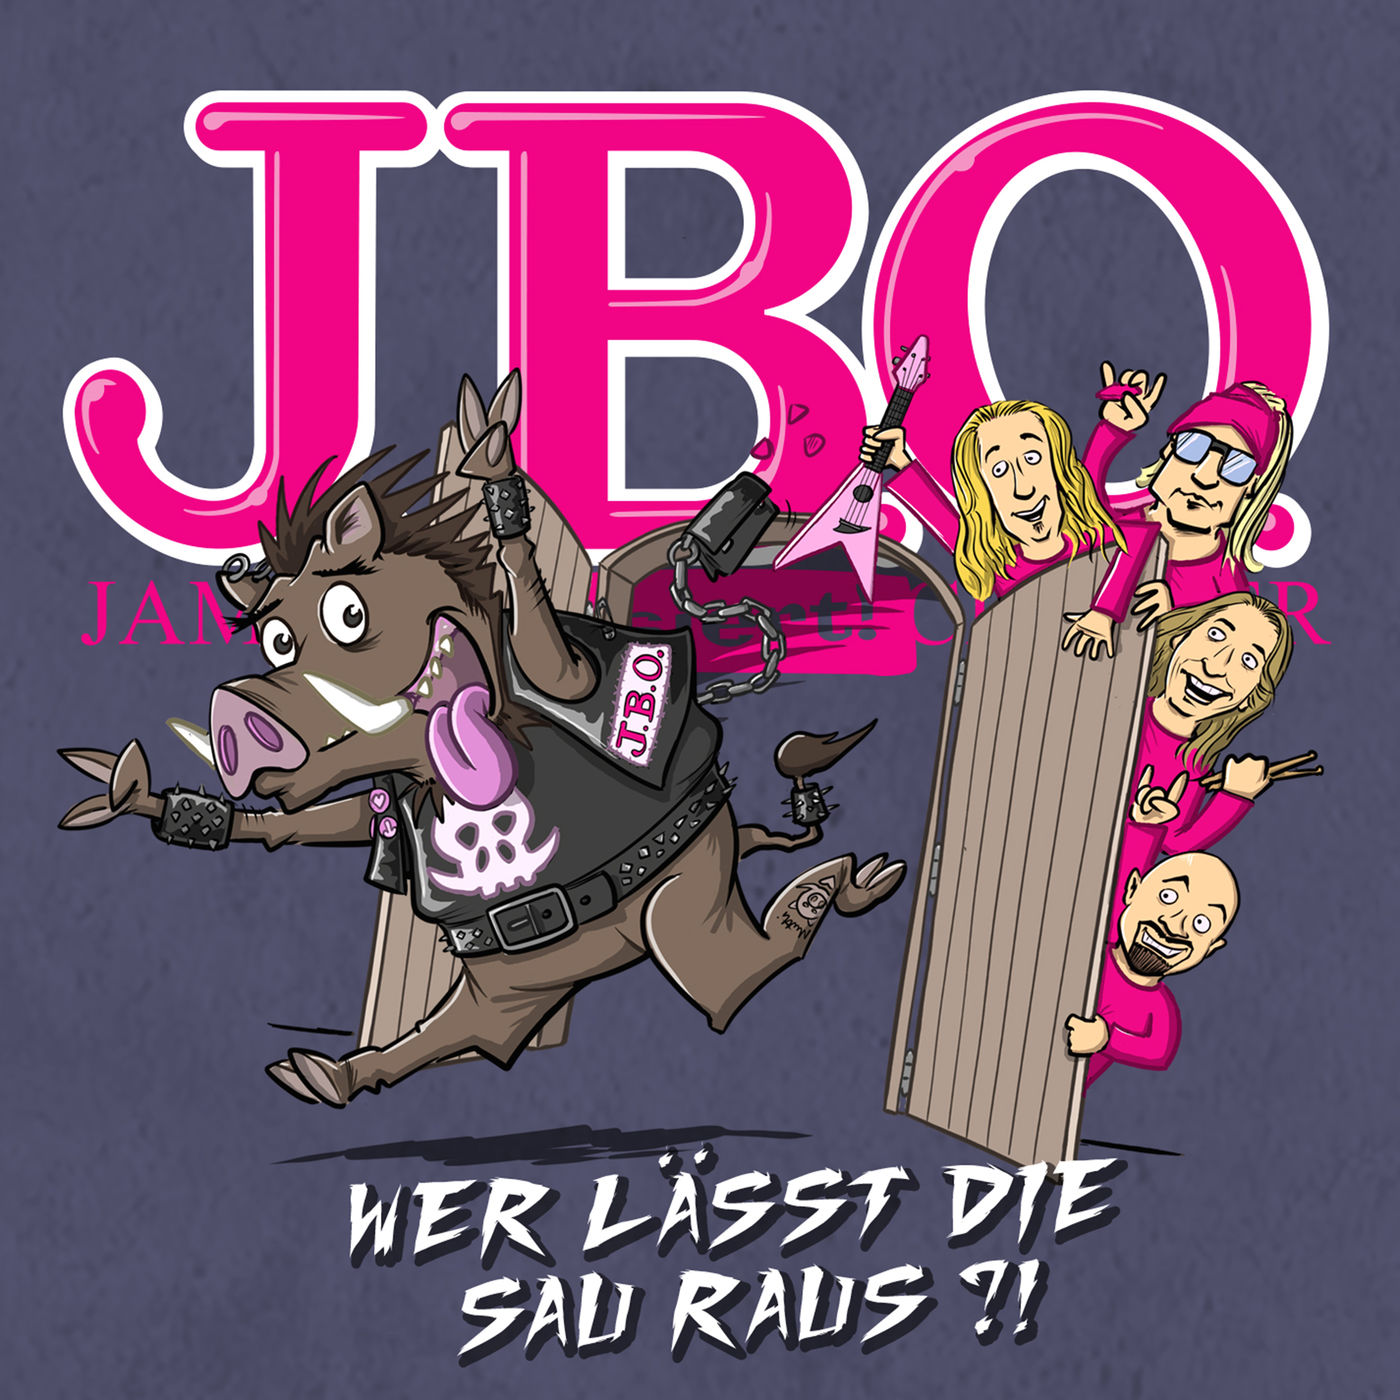 J.B.O. - Wer lässt die Sau raus?! (2019)